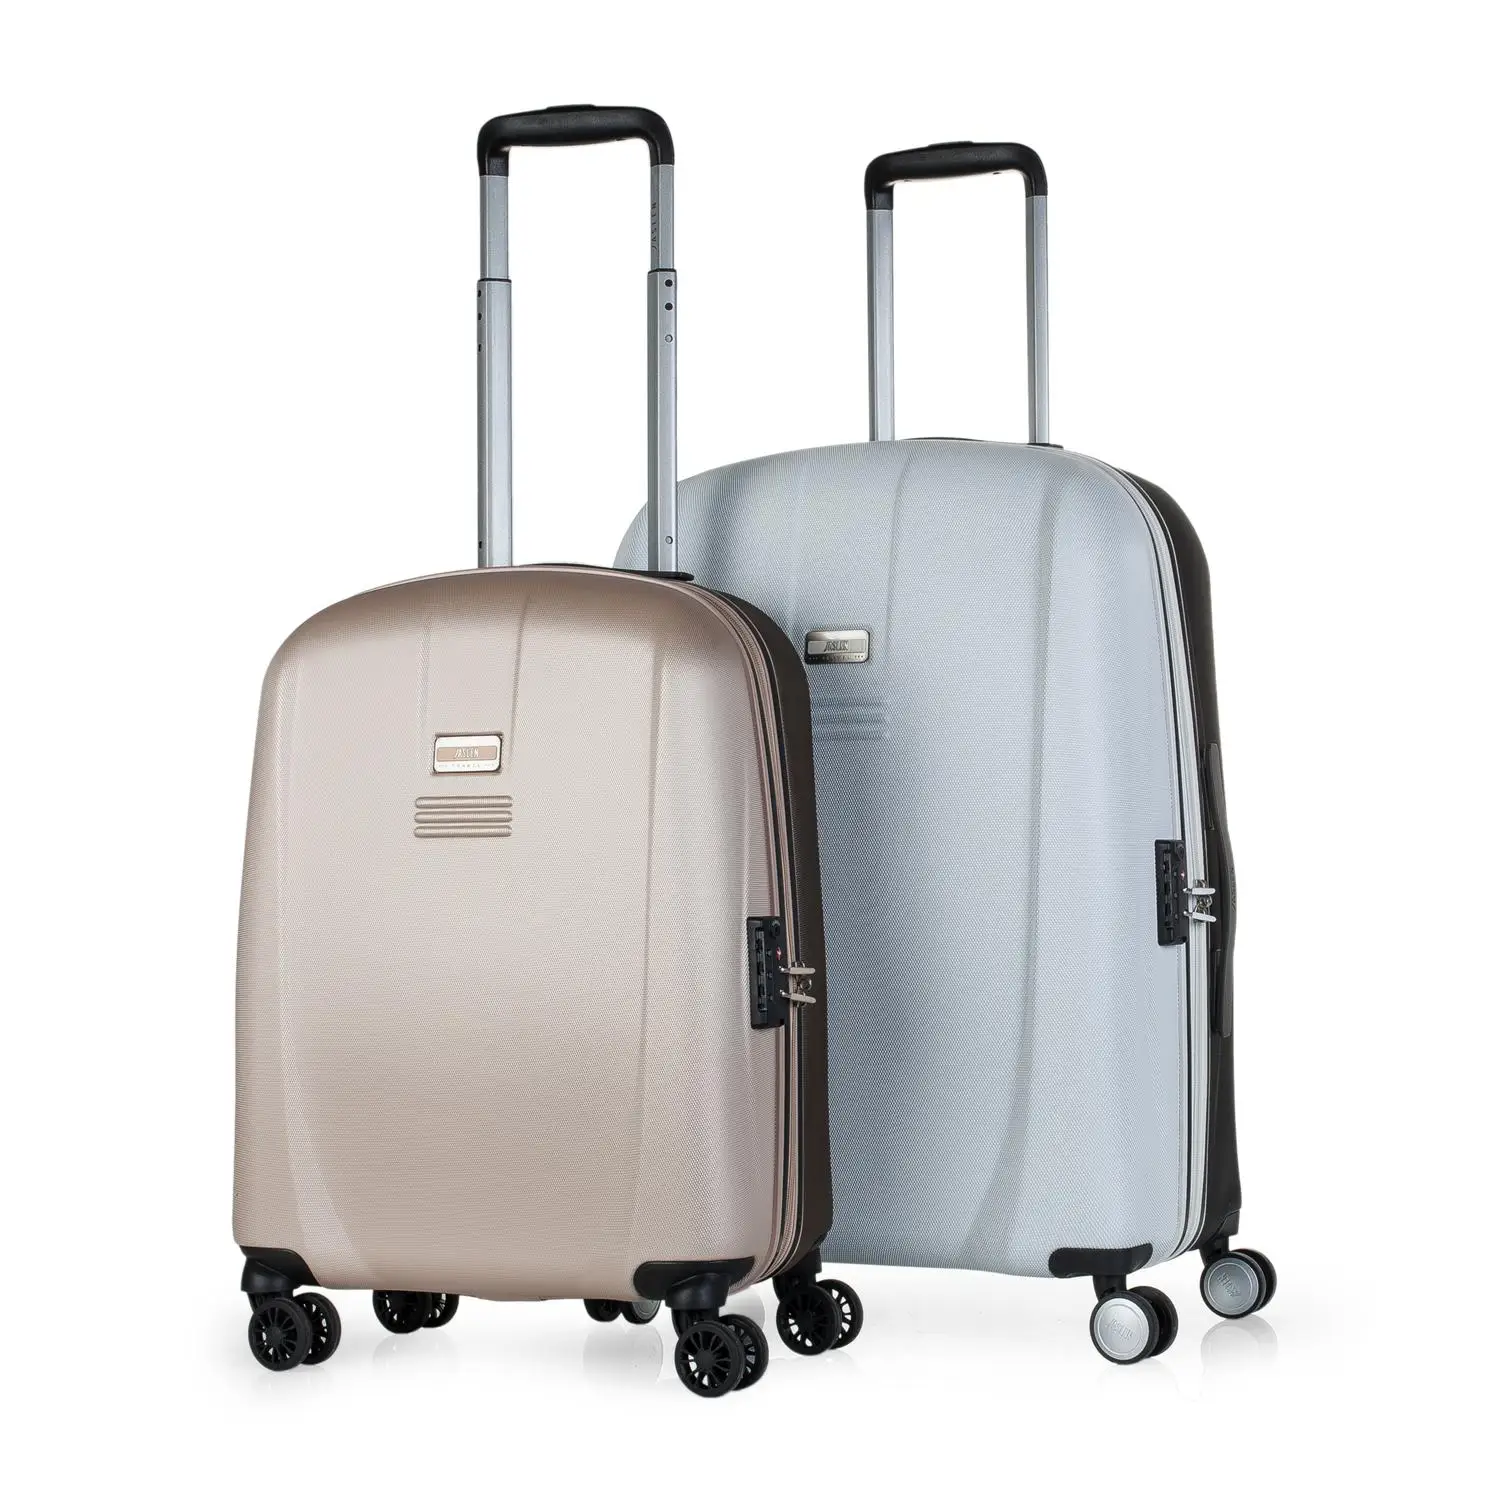 Juego De 'S чемоданы дорожные жесткие 4 колеса Колесики Тележки 55/66 см ABS. Стойкий и легкий. Ручки и C